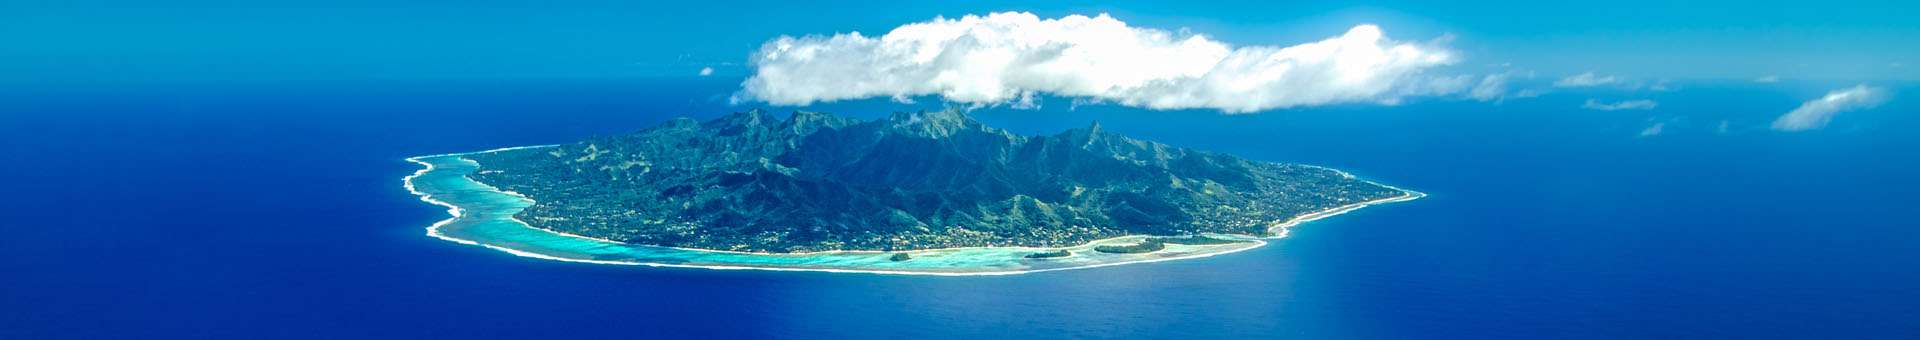 Pesquisar informações WHOIS sobre nomes de dominio nas Ilhas Cook